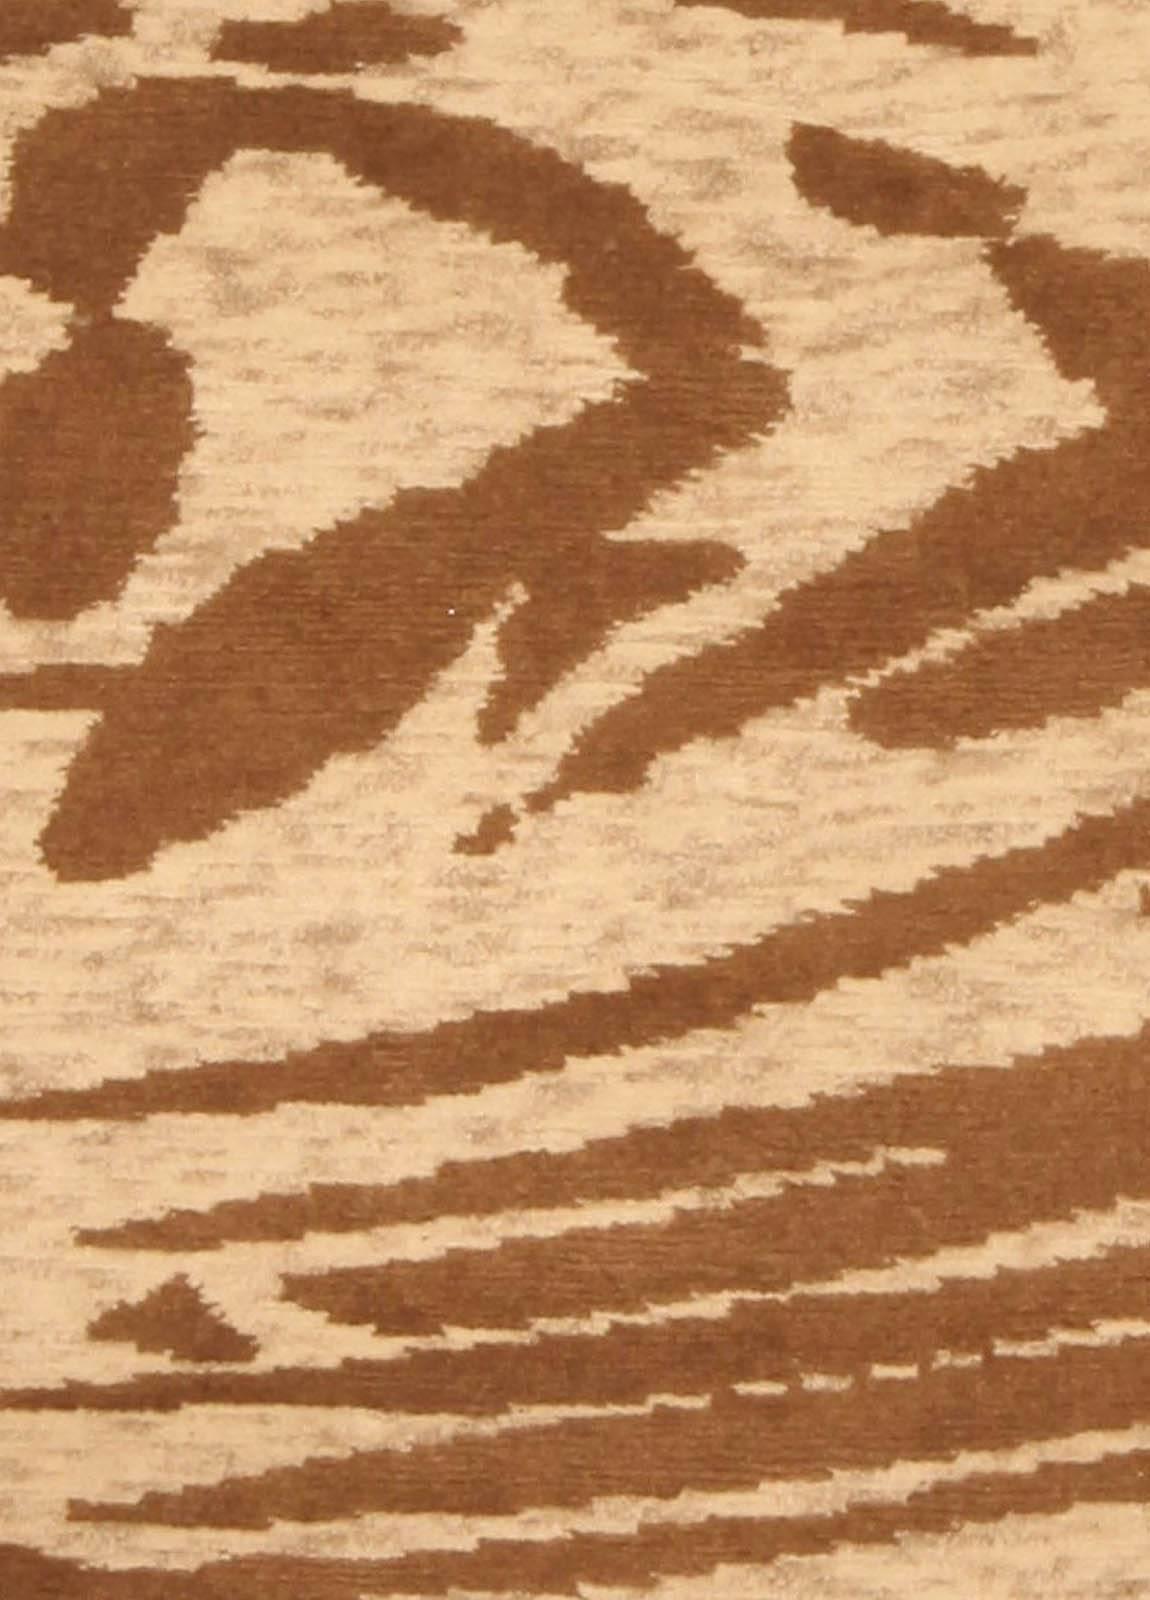 Modern abstract whirl brown handmade wool rug by Doris Leslie Blau.
Size: 4'8